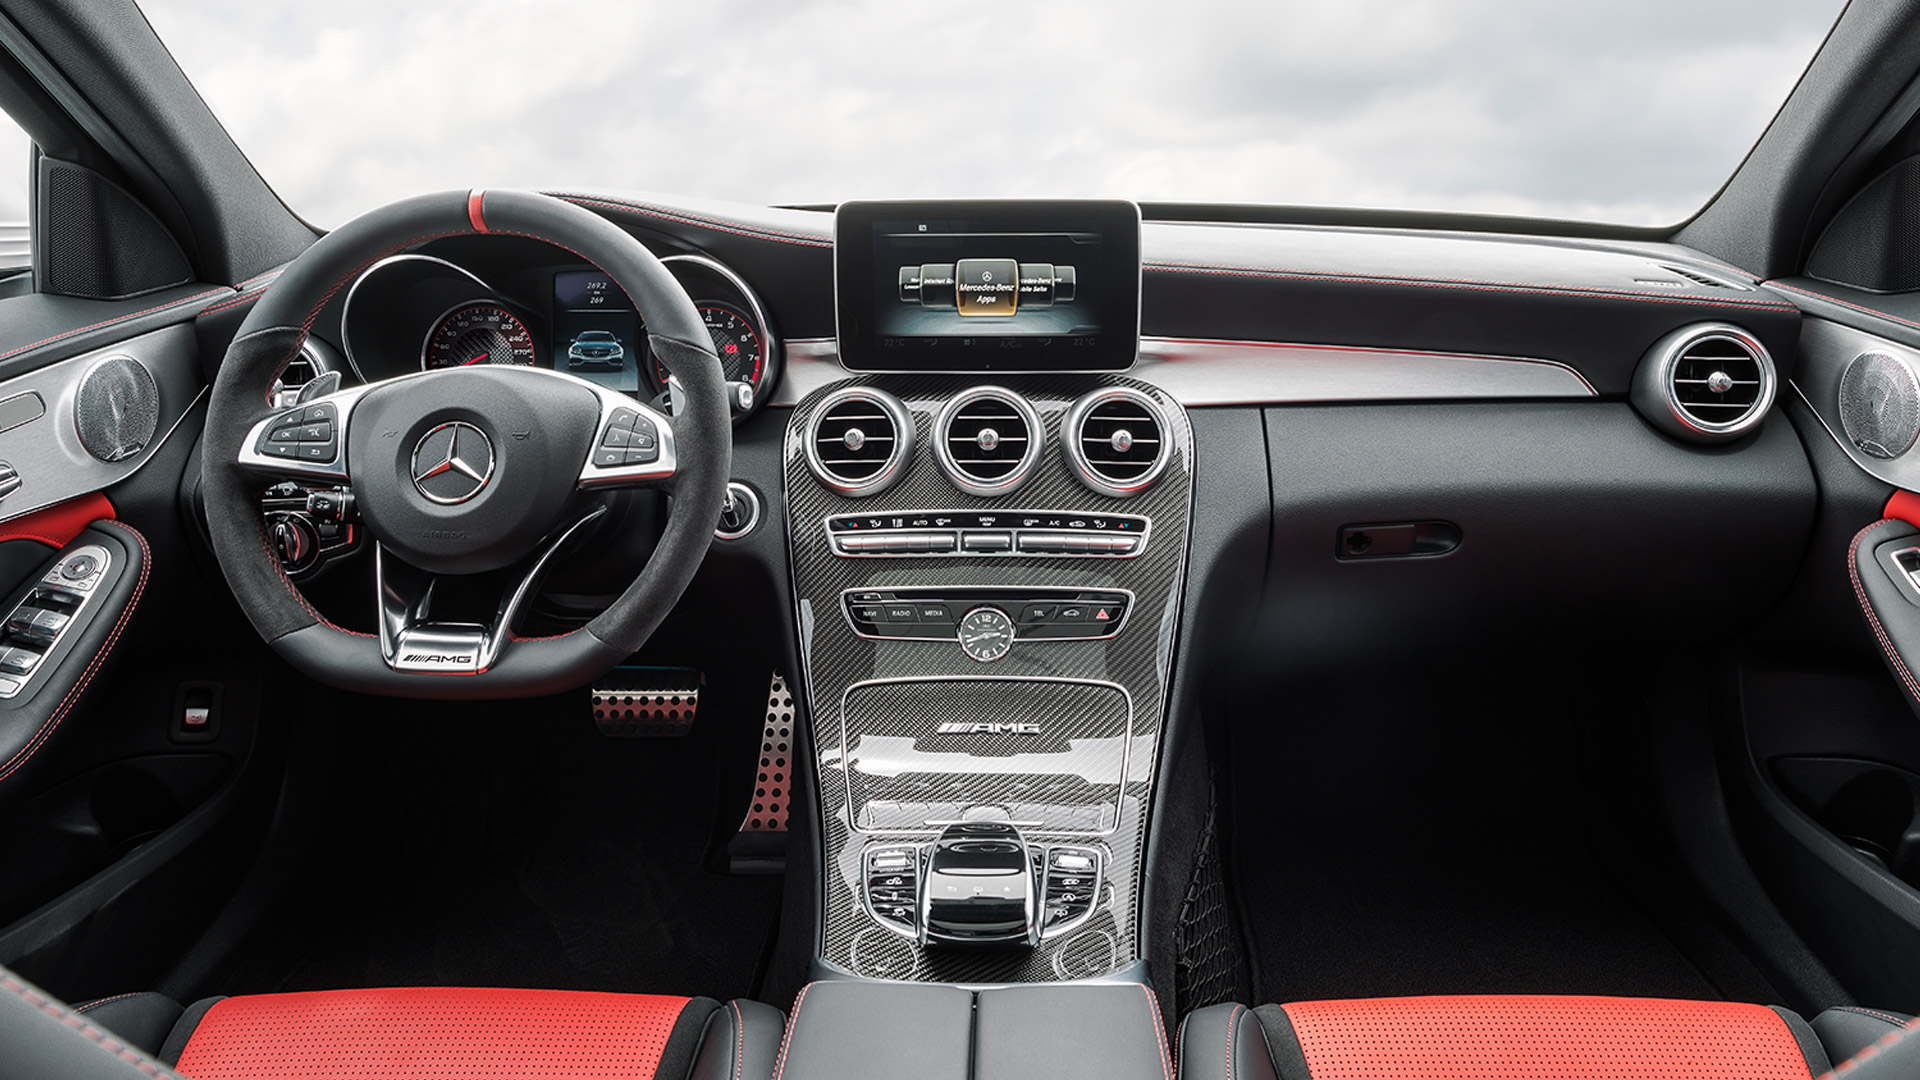 Mercedes Benz C 63 Amg 2015 S Interior Car Photos Overdrive